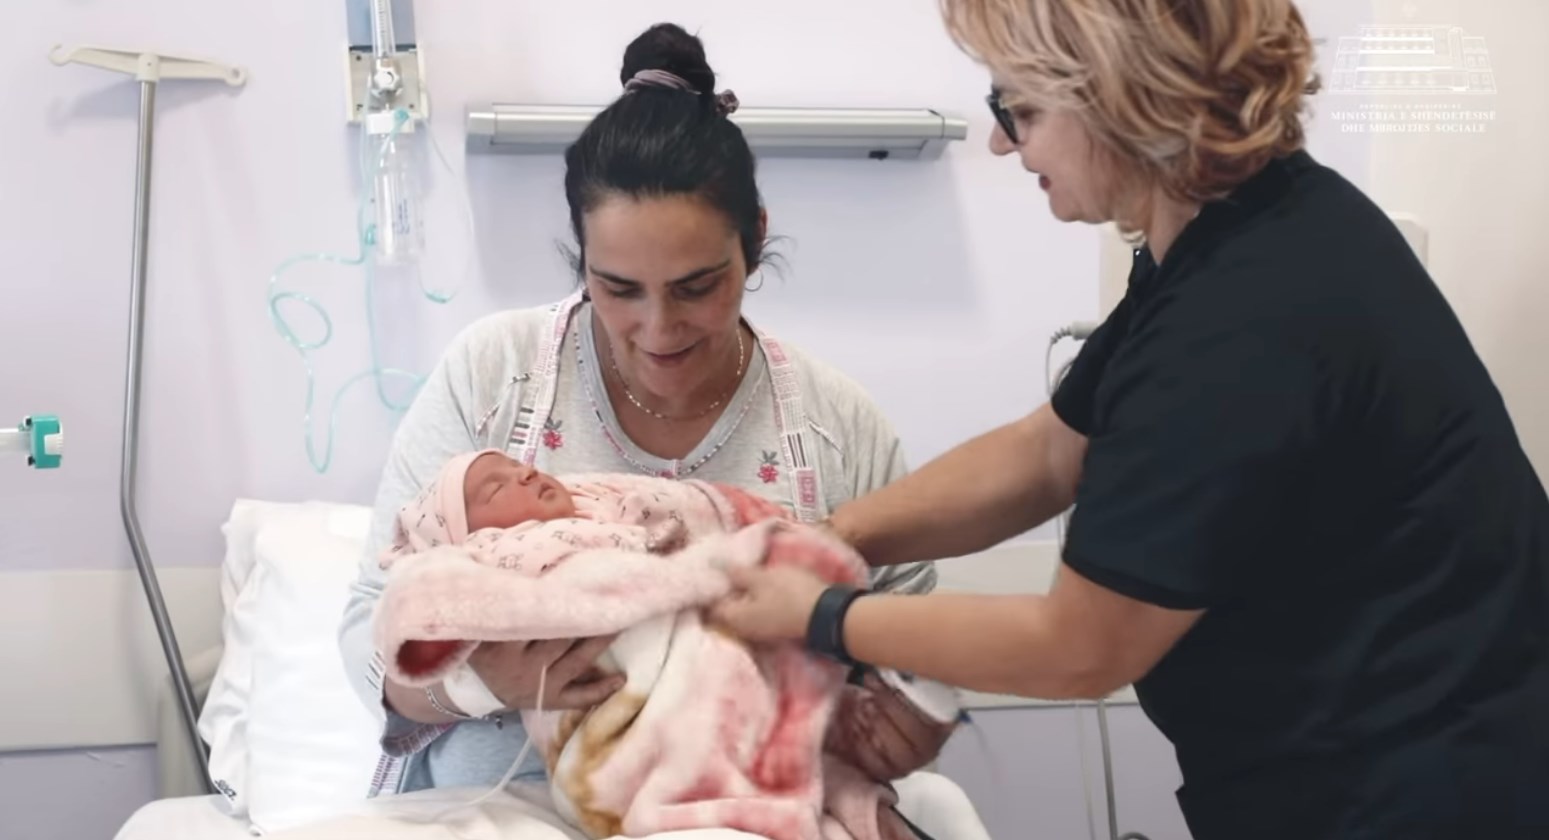 Nëna dhe foshnja kalojnë rrezikun për jetën falë mjekëve në “Mbretëresha Geraldinë”